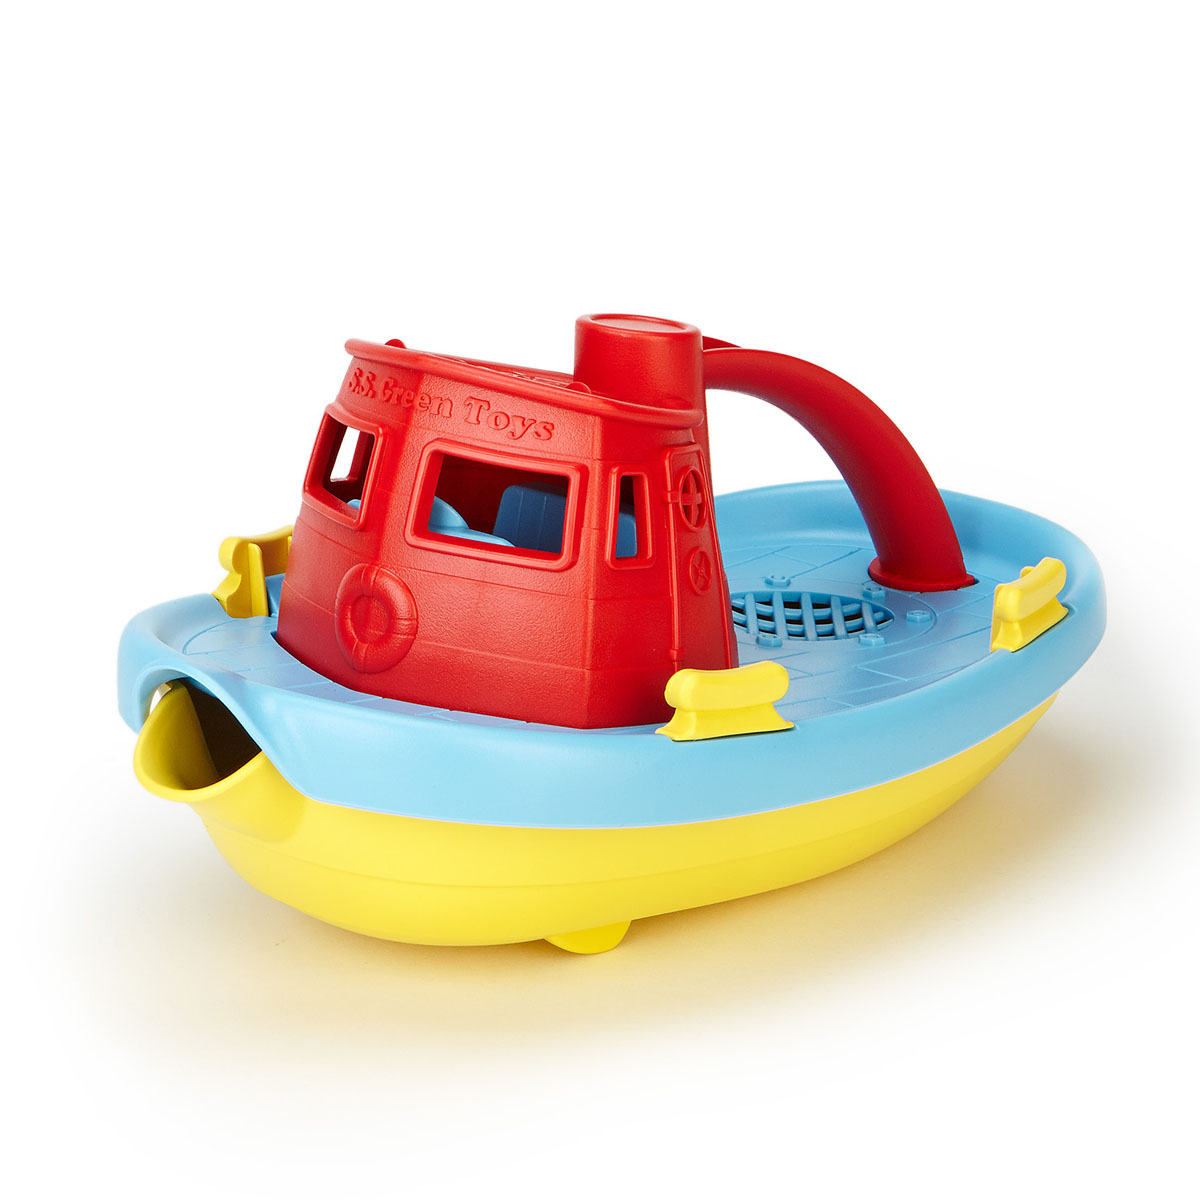 Đồ chơi tàu thuỷ kéo Green Toys cho bé từ 6 tháng – Đỏ